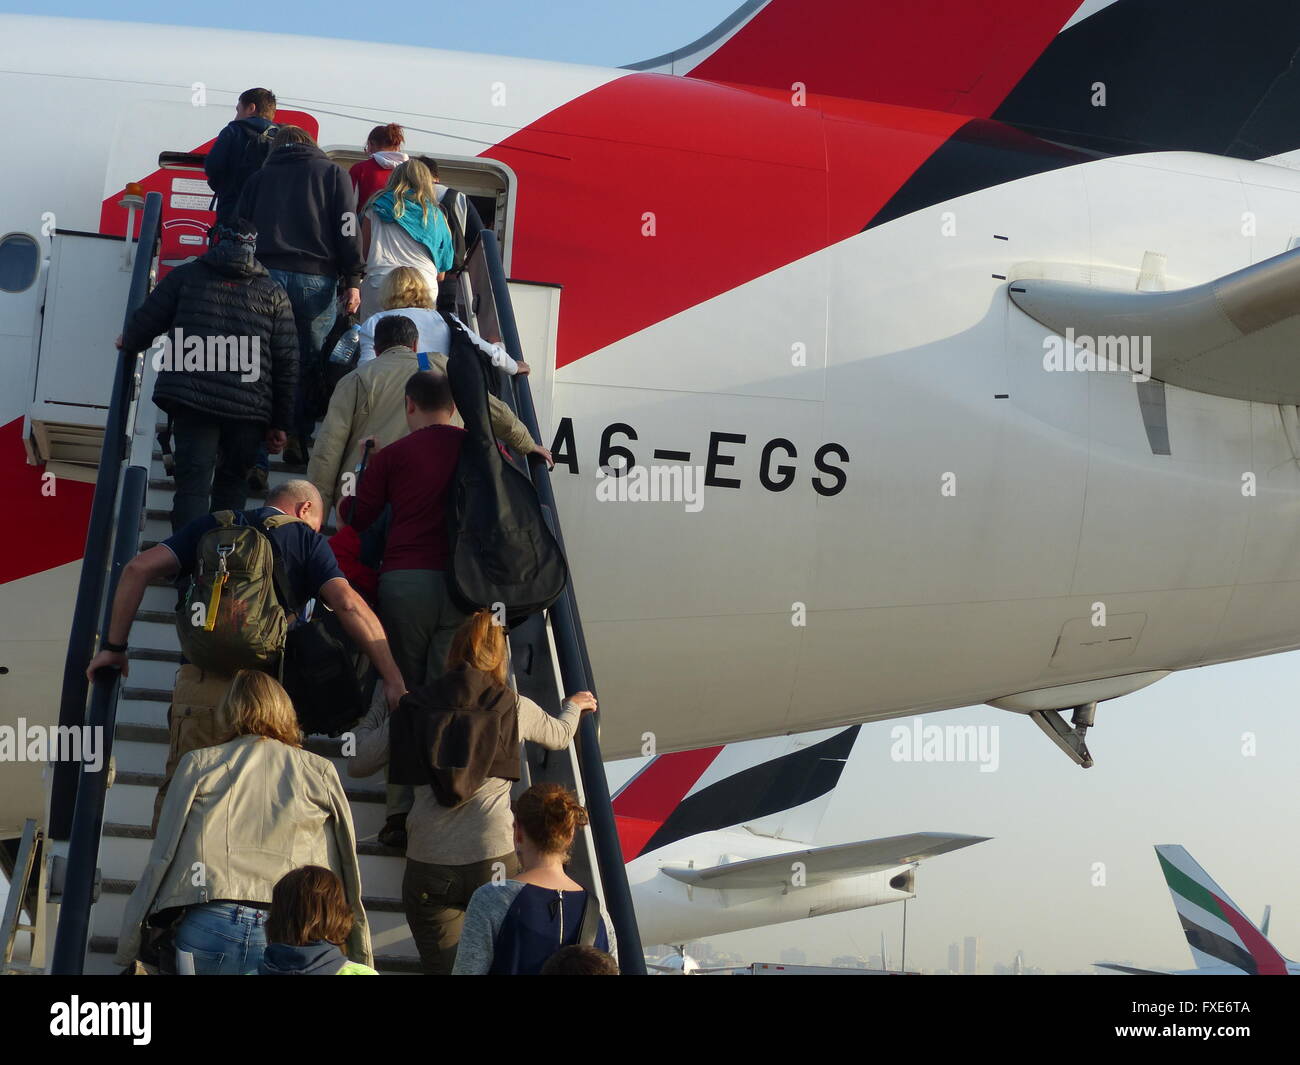 Passeggeri salendo le scale per salire a bordo del volo Emirates Foto Stock